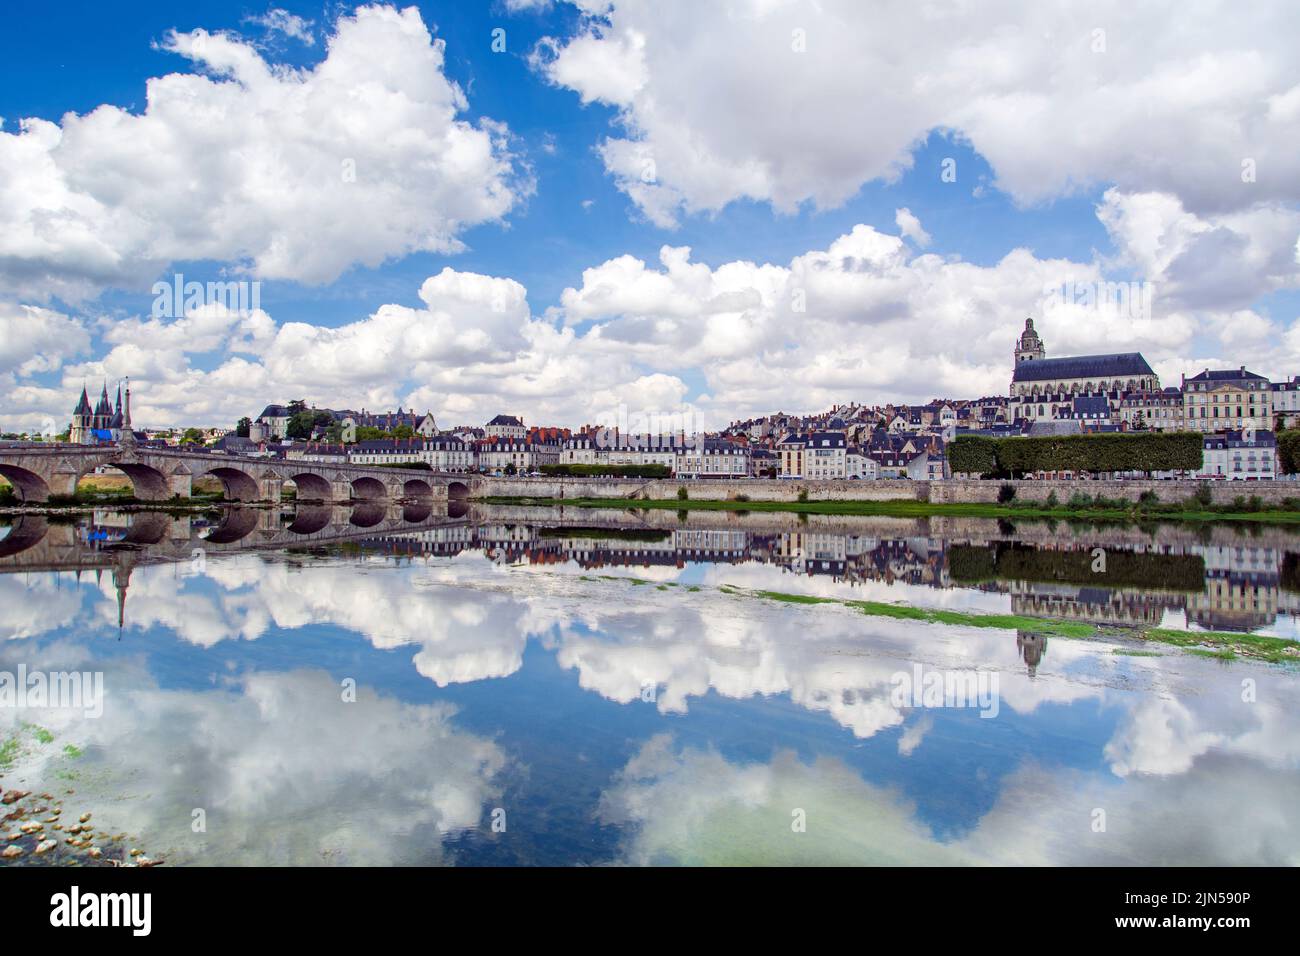 Blois, Valle del Loira, Francia: Blois horizonte, ciudad a orillas del río Loira con el puente Jacques Gabriel, capital del departamento de Loir-et-Cher en el centro Foto de stock